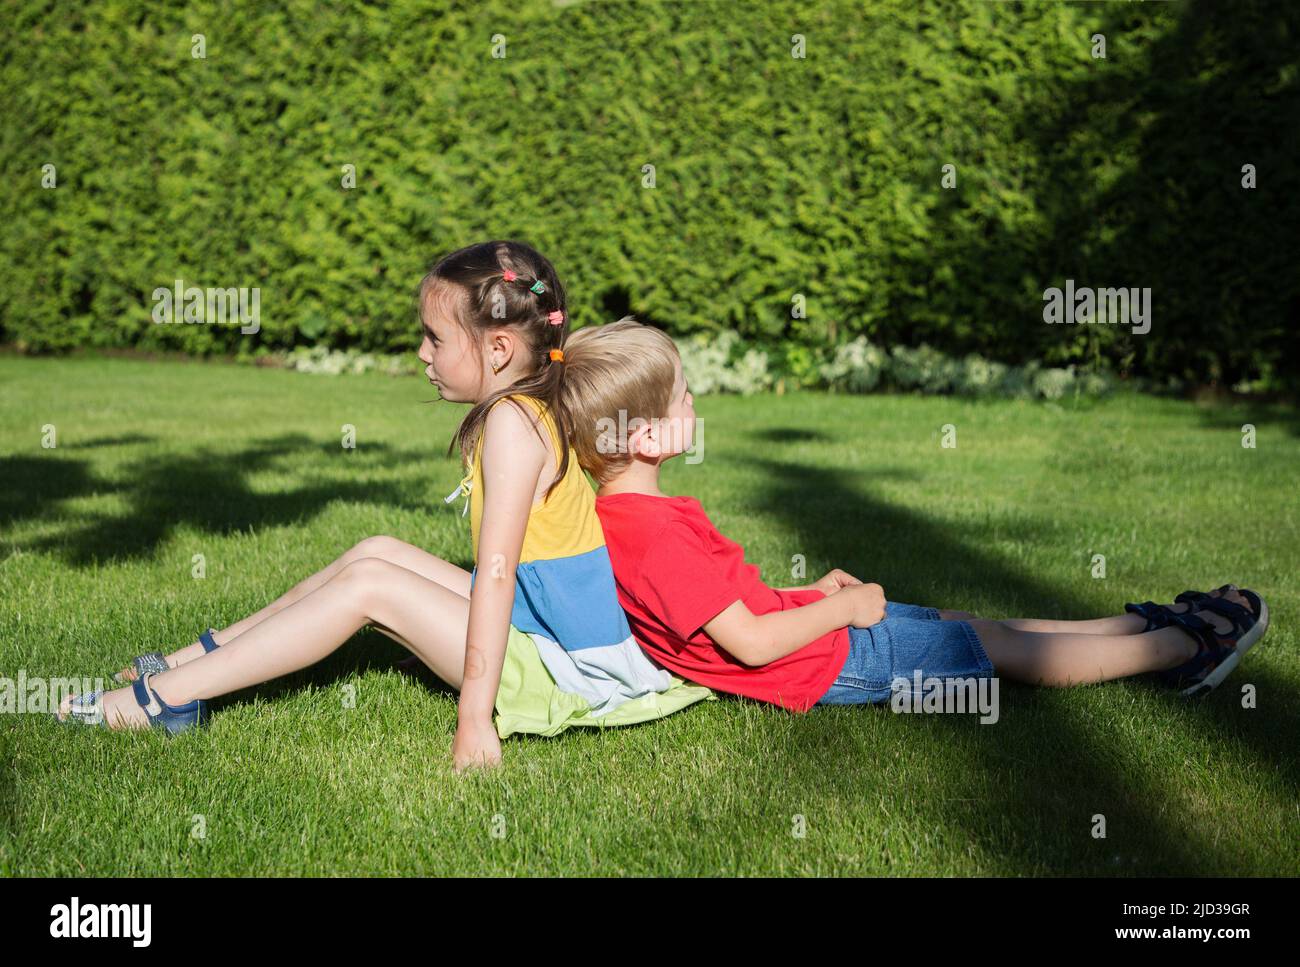 il ragazzo e una ragazza di 6-7 anni sono seduti di nuovo sull'erba in giardino, e parlano e giocano nel verde del parco soleggiato. Amicizia, infanzia, rel Foto Stock